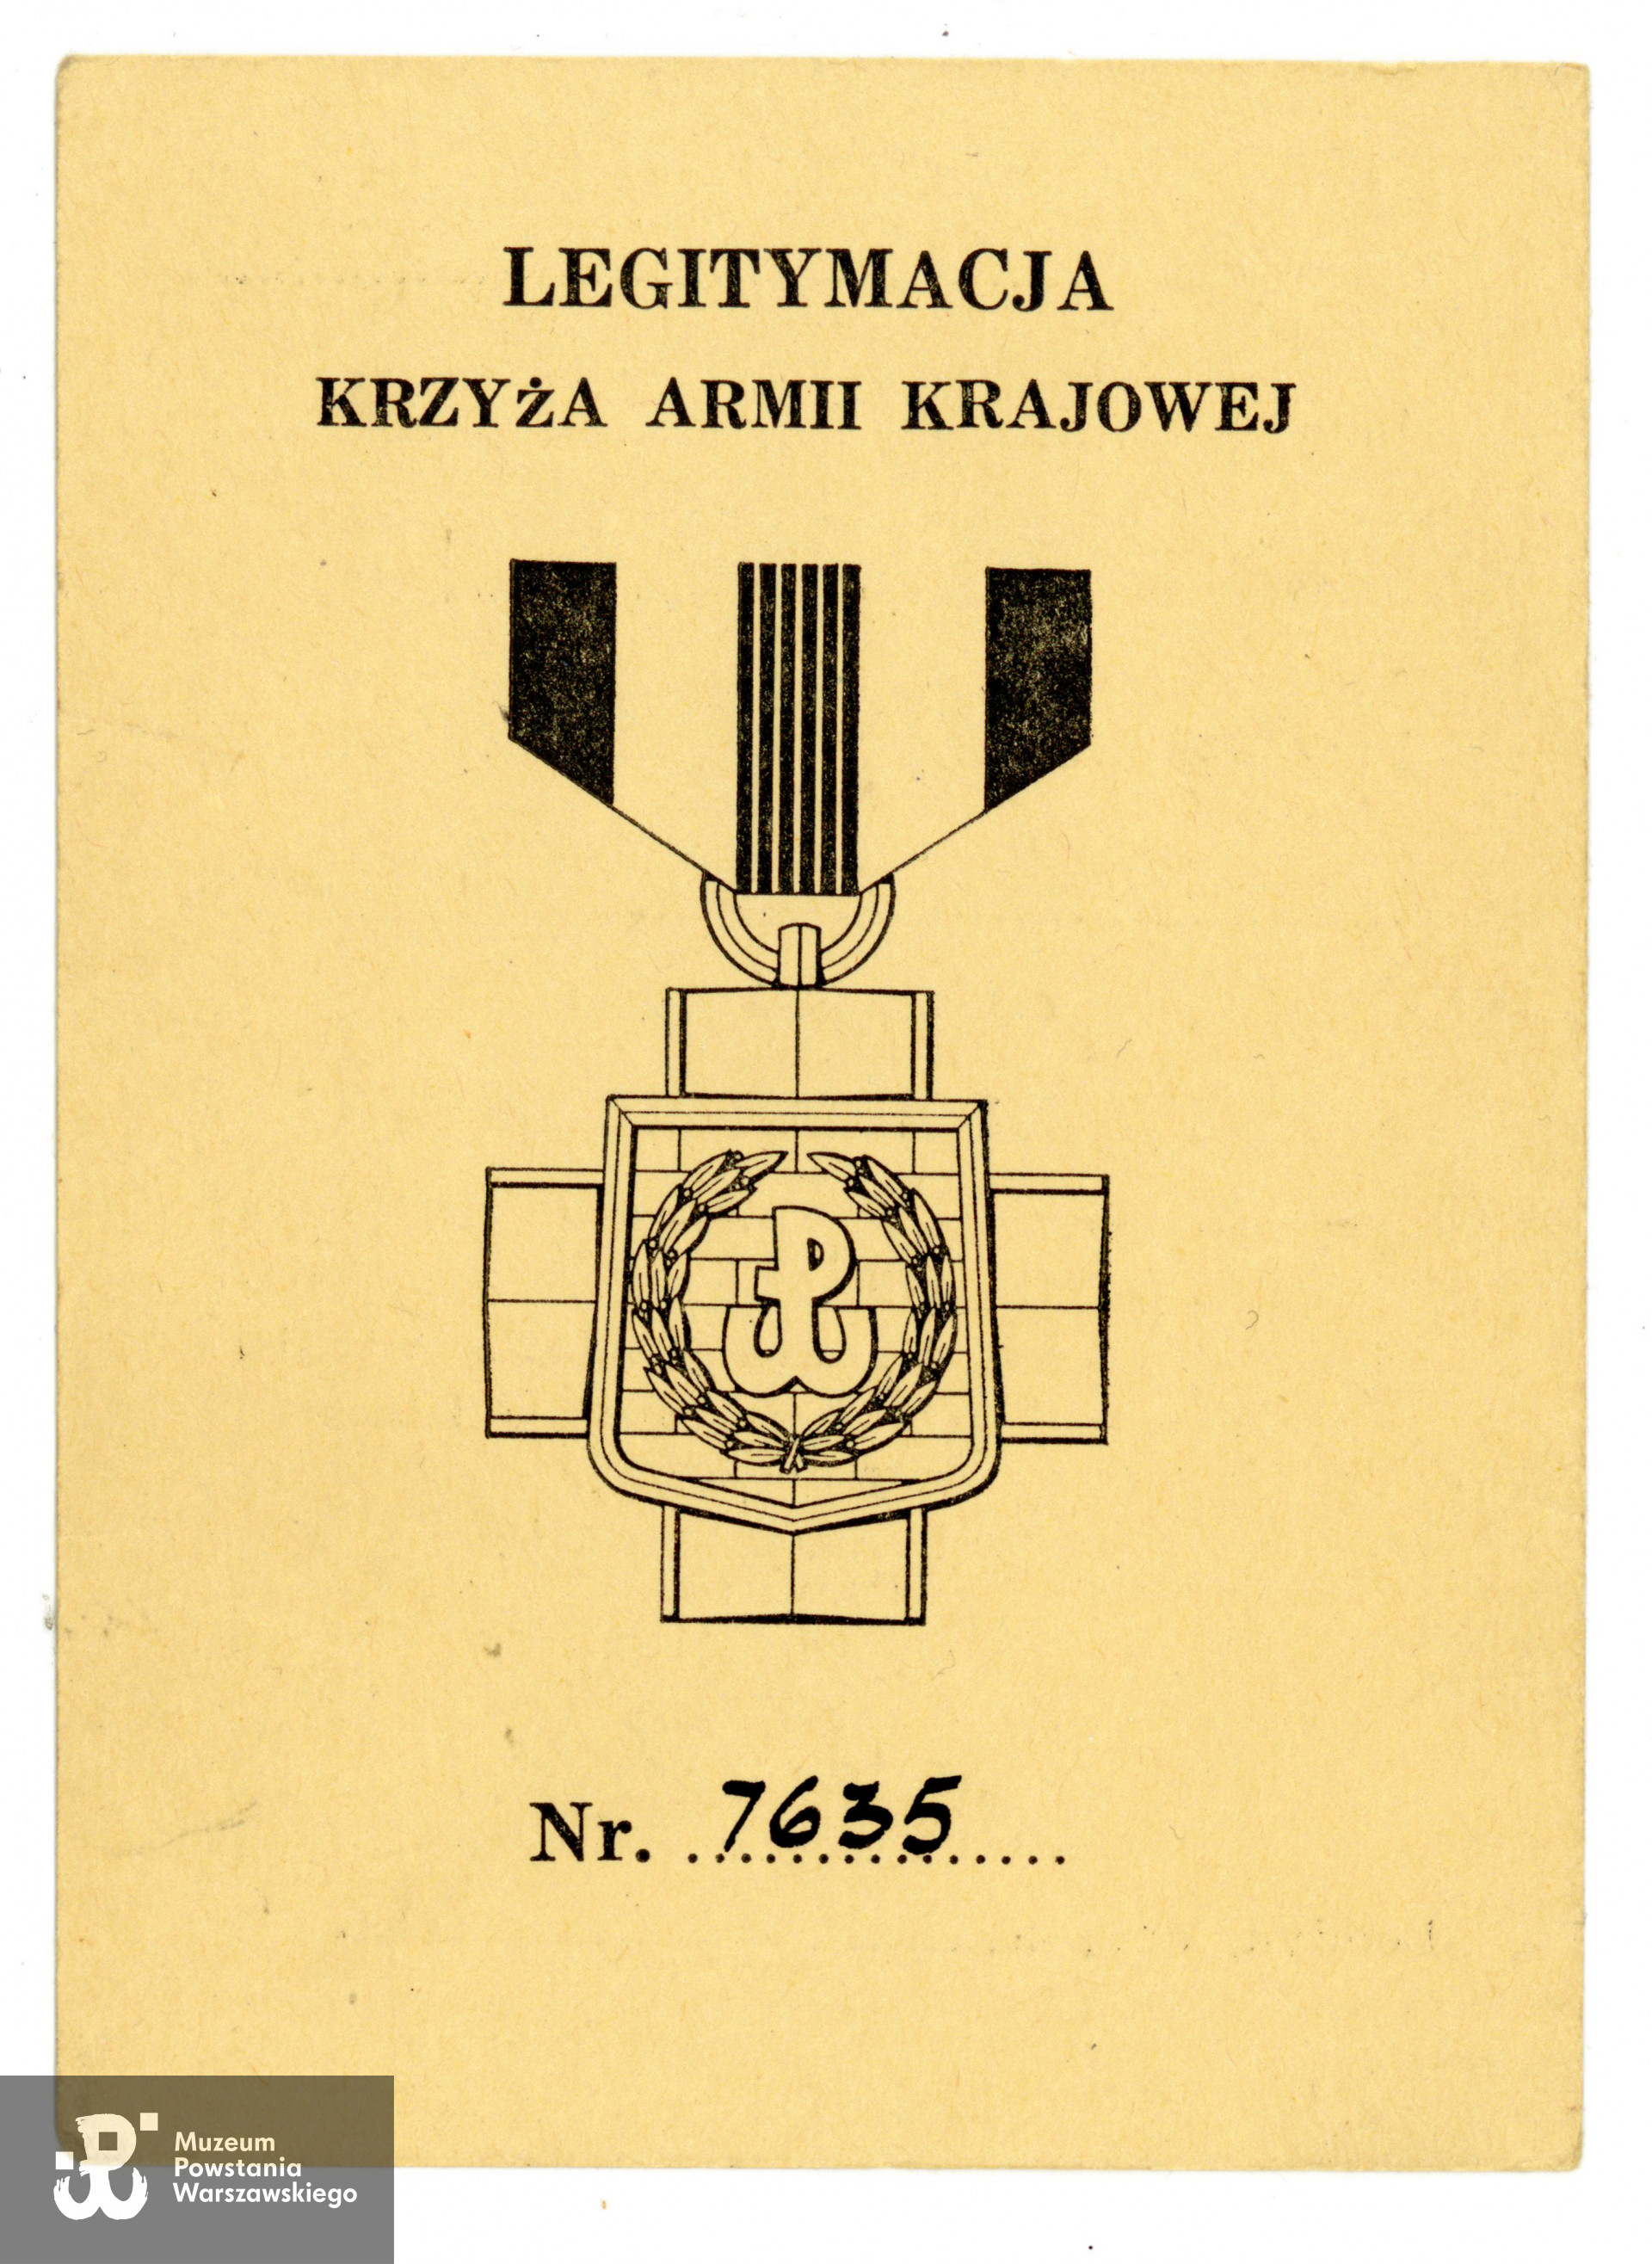 Krzyż Armii Krajowej. Ze zbiorów prywatnych p. Mikołaja Paciorka